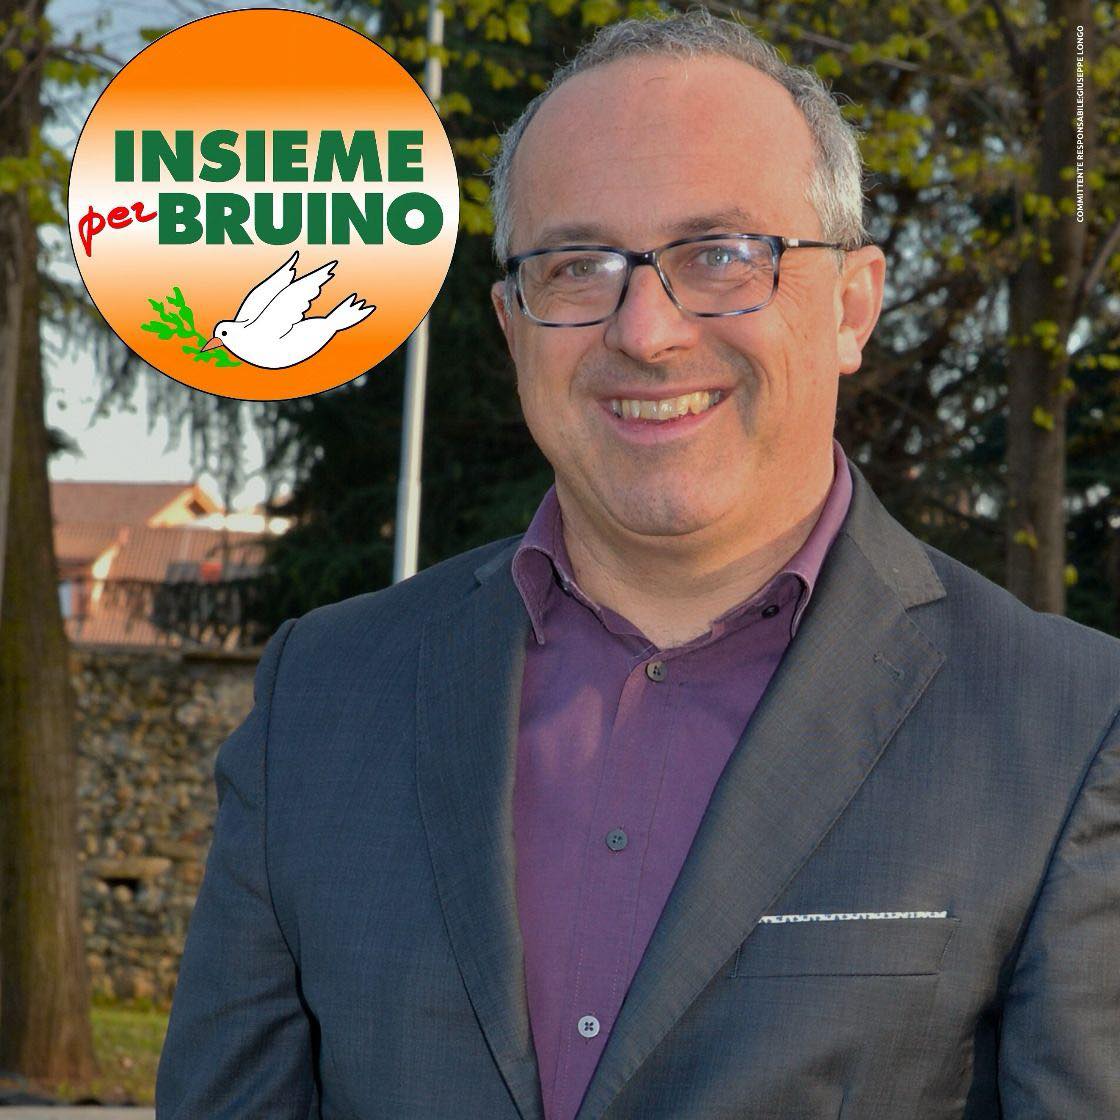 A Bruino vince dopo diversi anni Andrea Appiano (Insieme per Bruino),